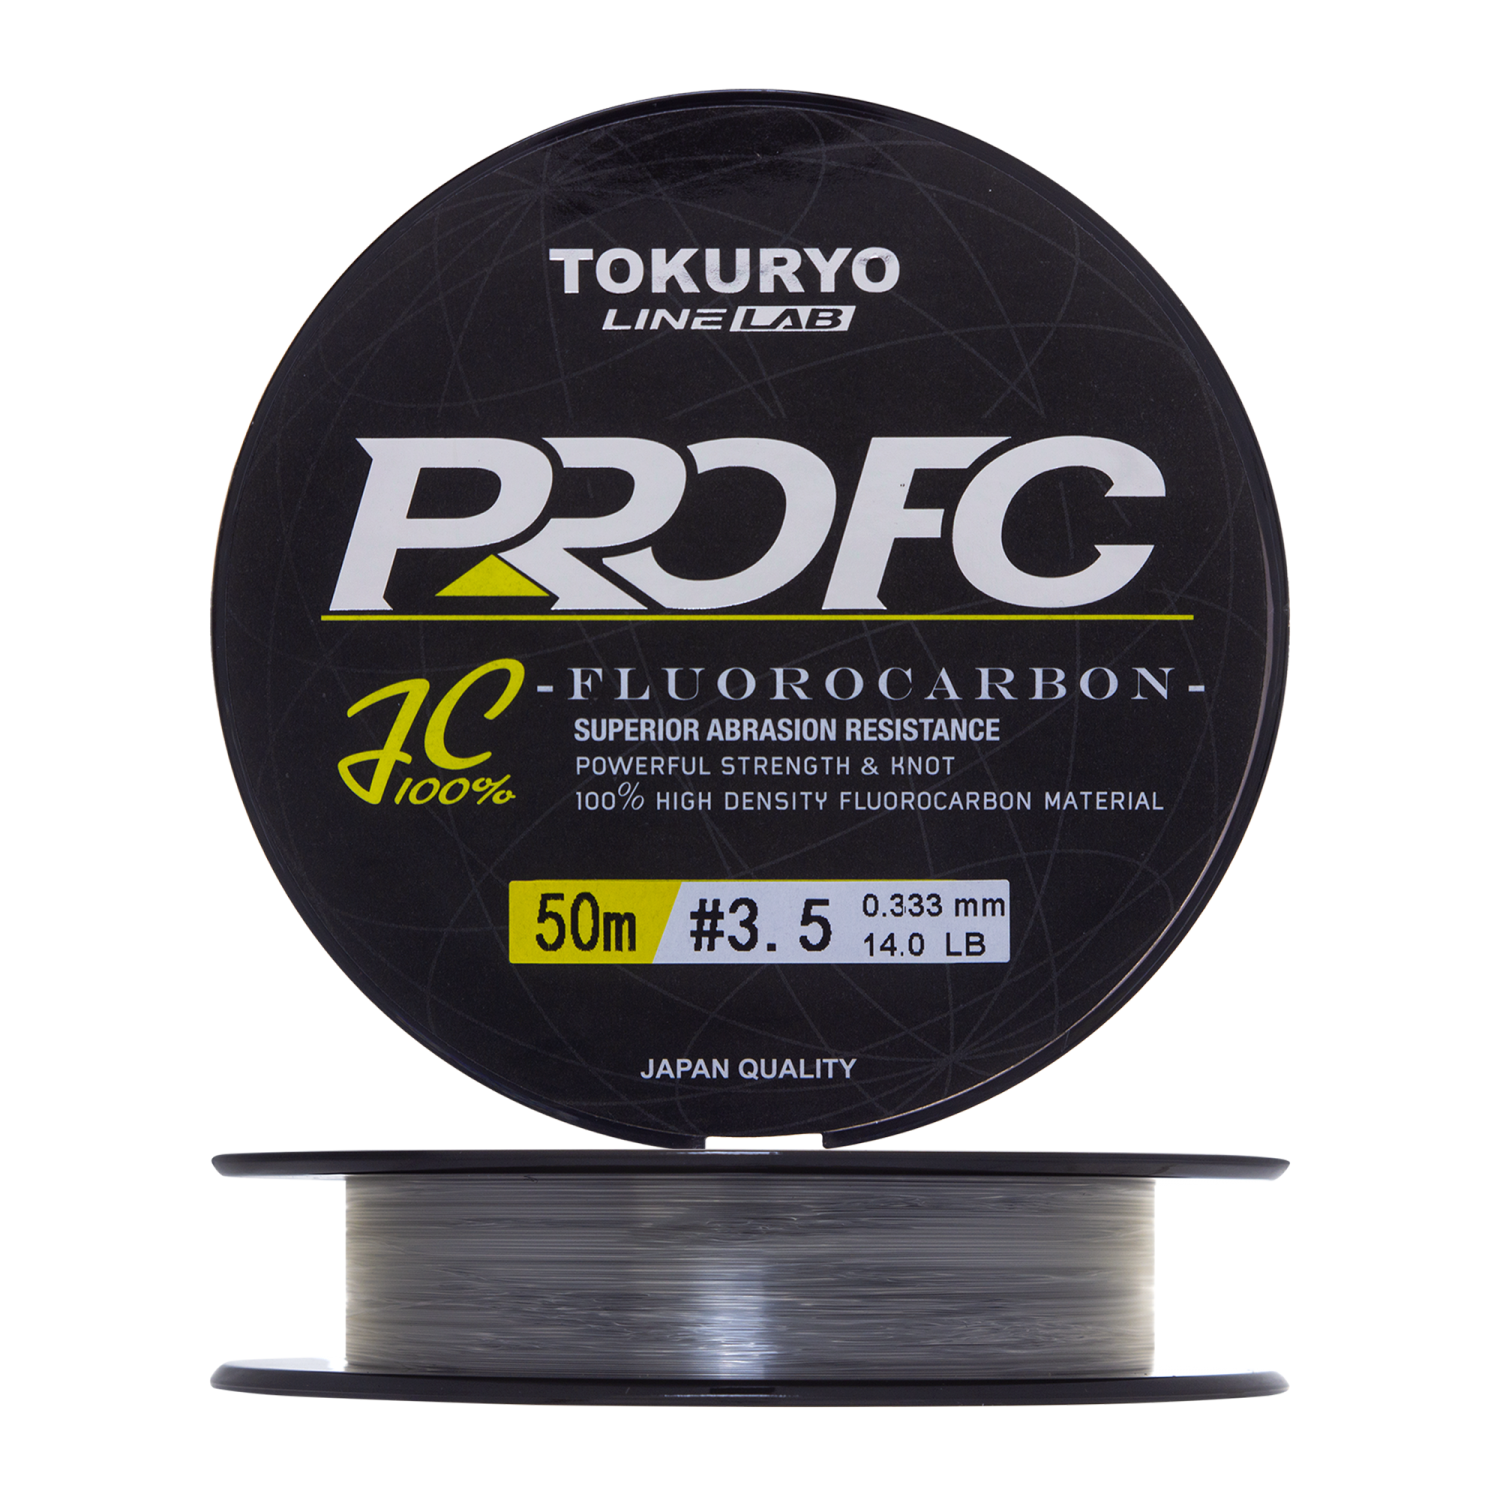 Флюорокарбон Tokuryo Fluorocarbon Pro FC #3,5 50м (clear)